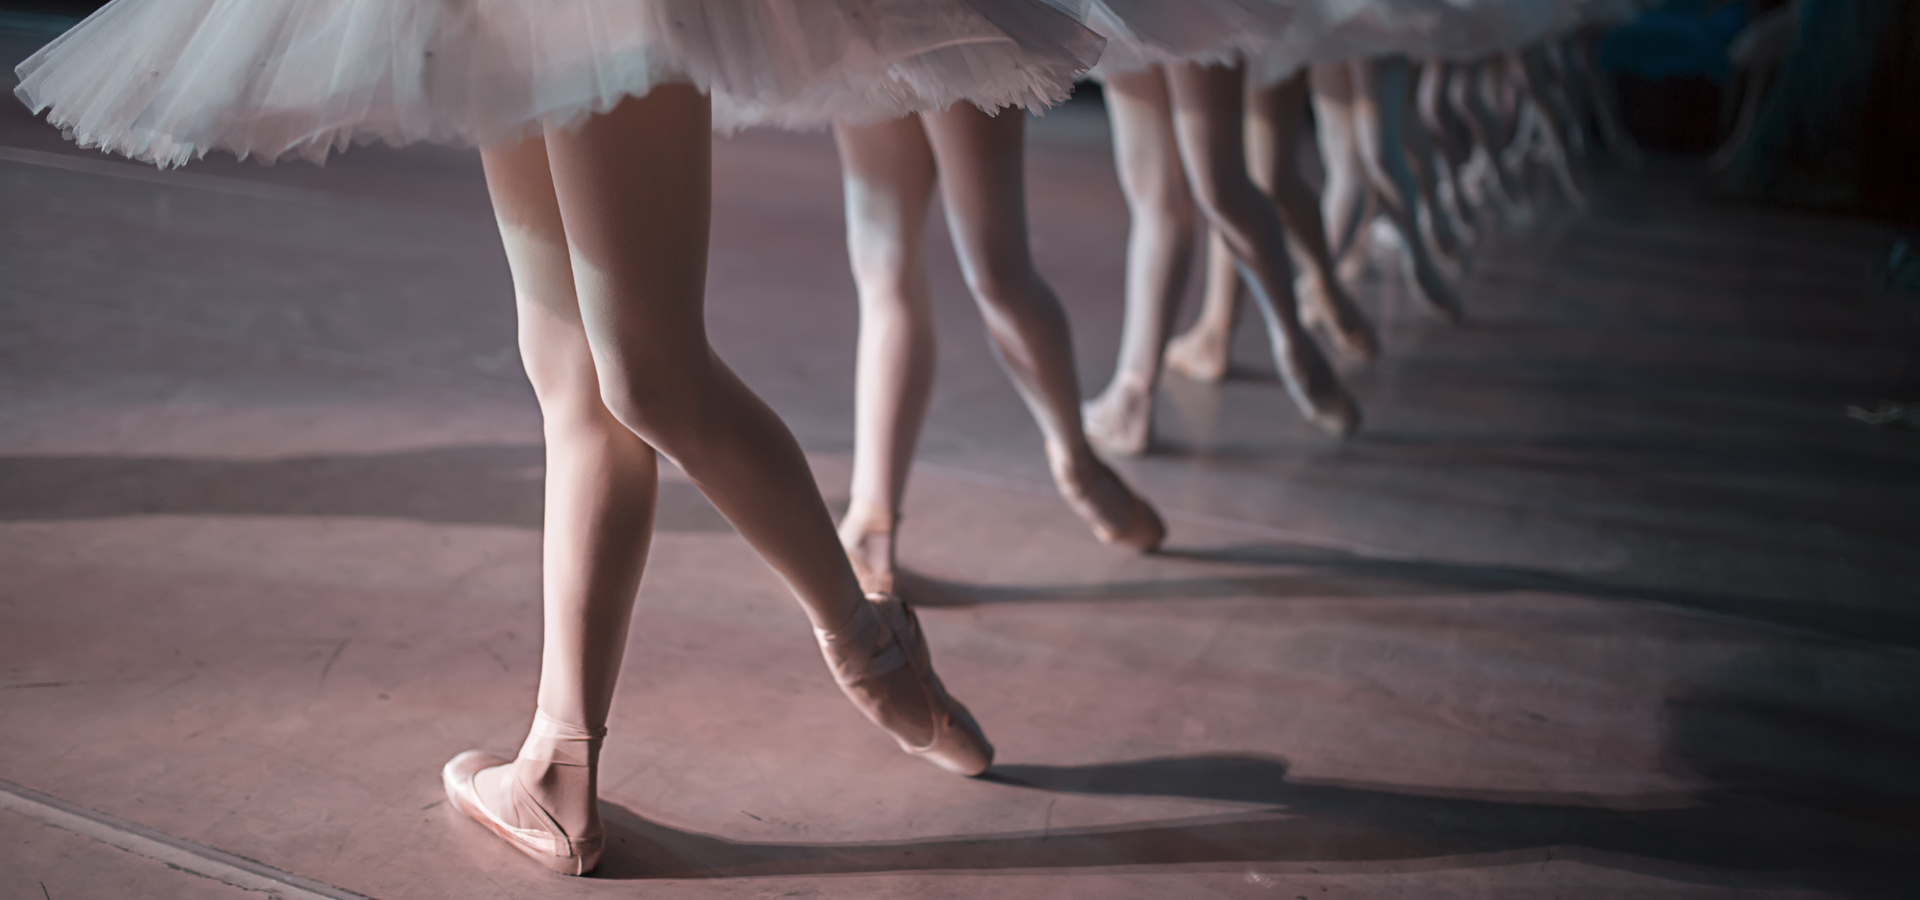 Saiba quais os principais métodos do ballet clássico e suas